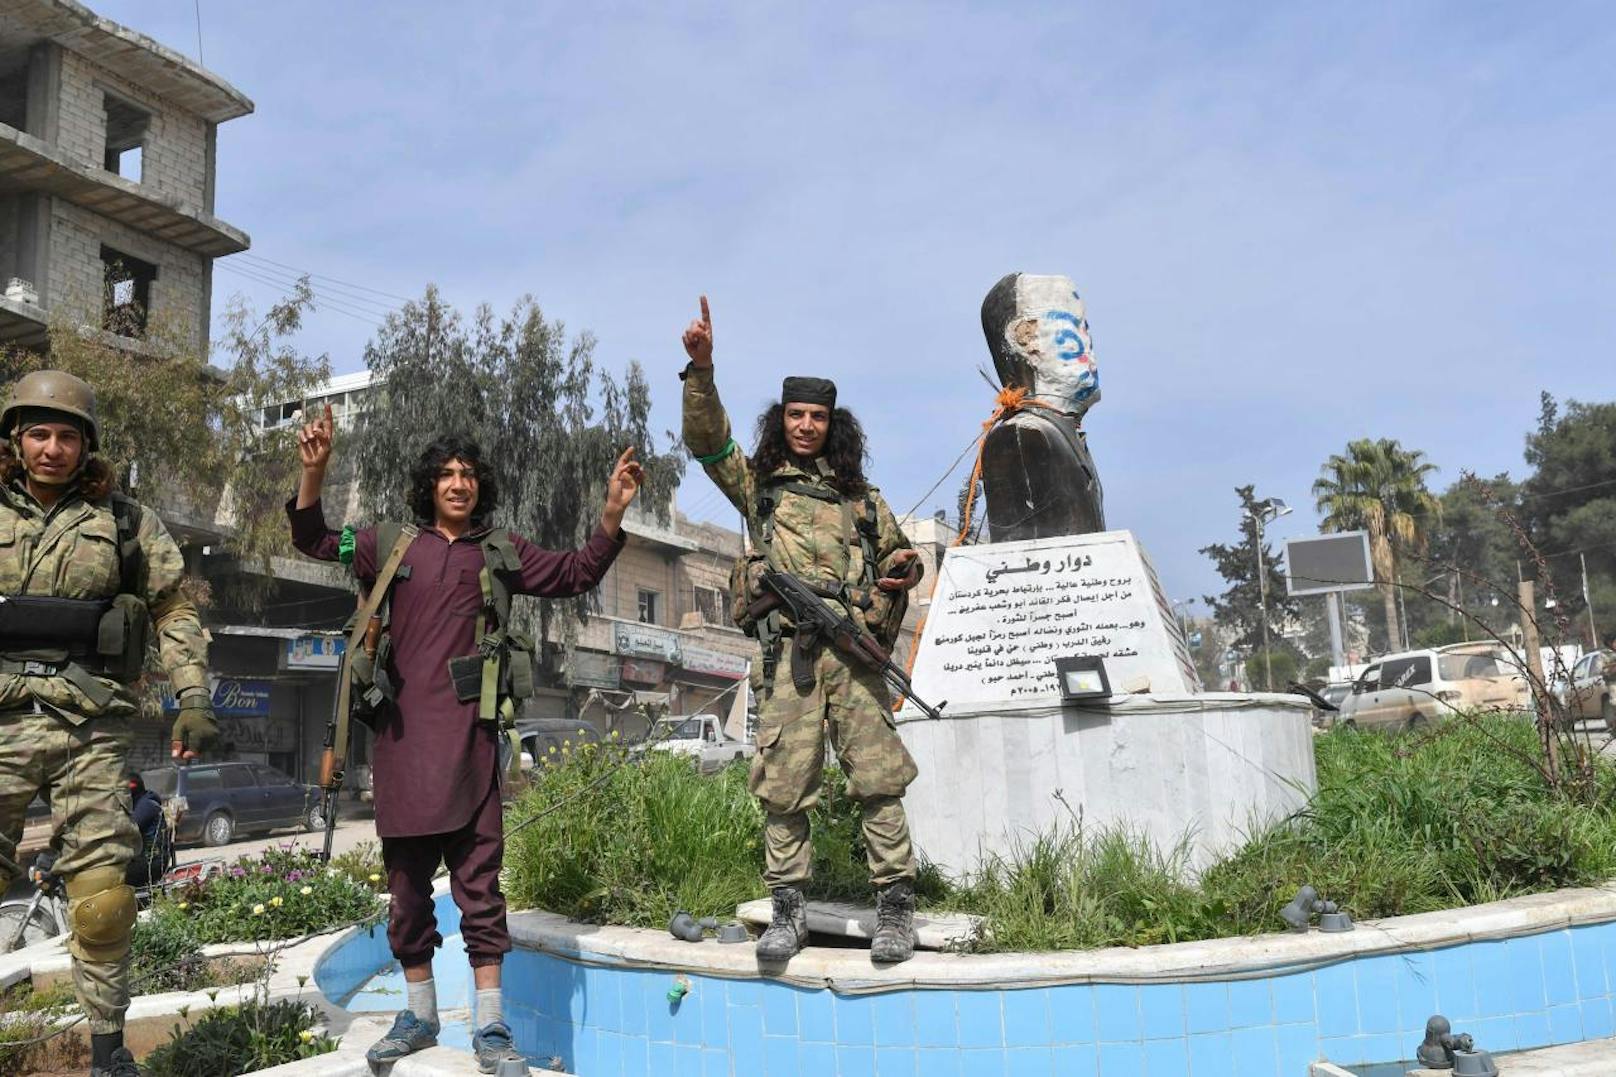 Nach der Eroberung von Afrin marschierten syrische Rebellenkämpfer in Afrin ein und plünderten. Viele der Rebellen zeigen unverhohlen den islamistischen Finger nach oben, eine Geste, die auch typisch für IS-Dschihadisten ist. Mit ihren langen Haaren und Bärten sowie den martialischen Messern erinnern die Kämpfer weniger an die Rebellen der "Freien Syrischen Armee" (FSA), deren Titel sie kapern, sondern an Dschihadisten diverser islamistischer Milizen.